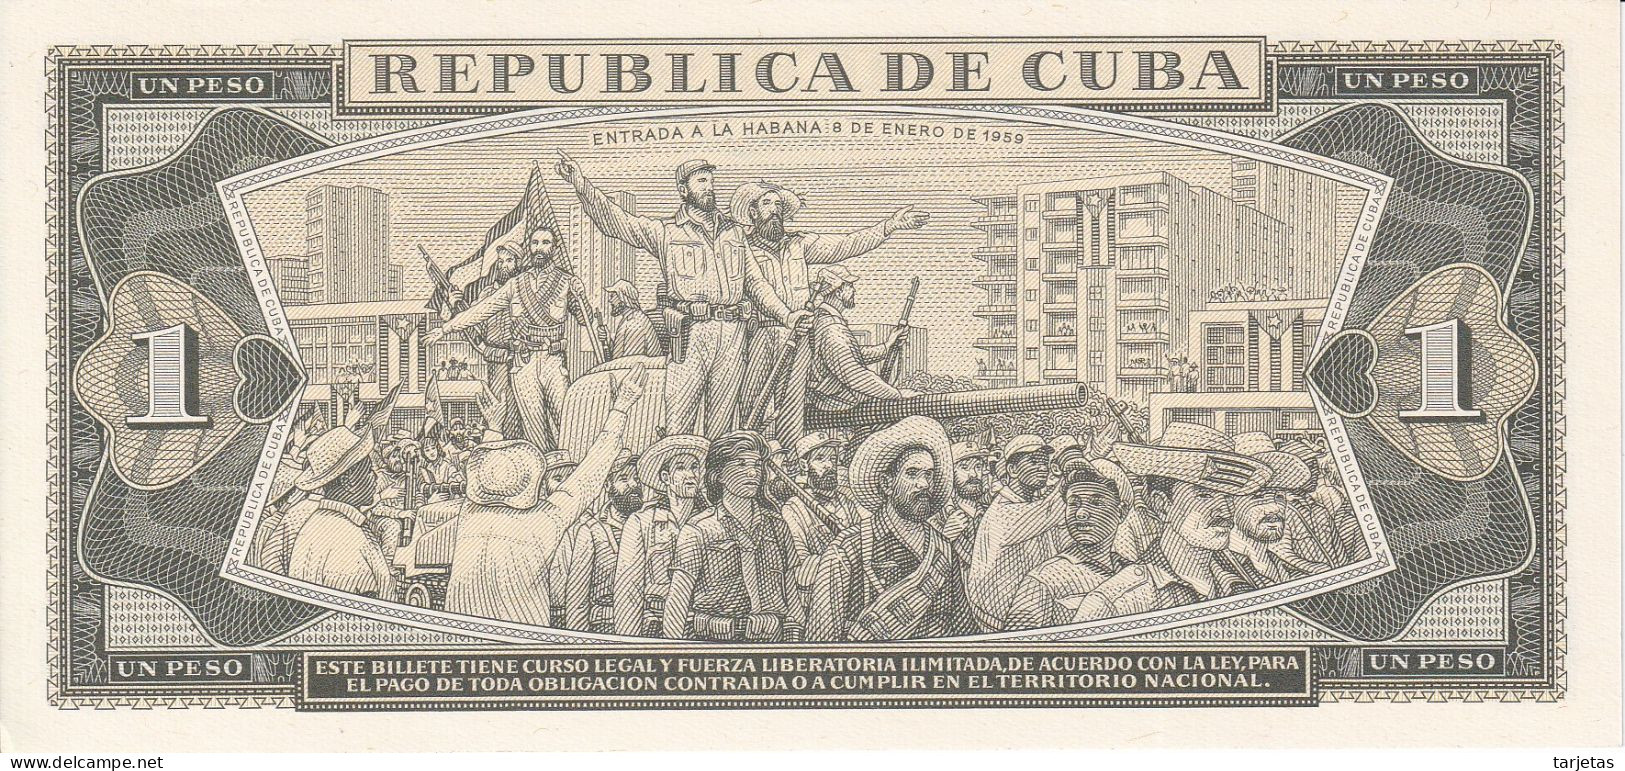 BILLETE DE CUBA DE 1 PESO DEL AÑO 1988 SIN CIRCULAR (UNC)  (BANKNOTE) - Cuba